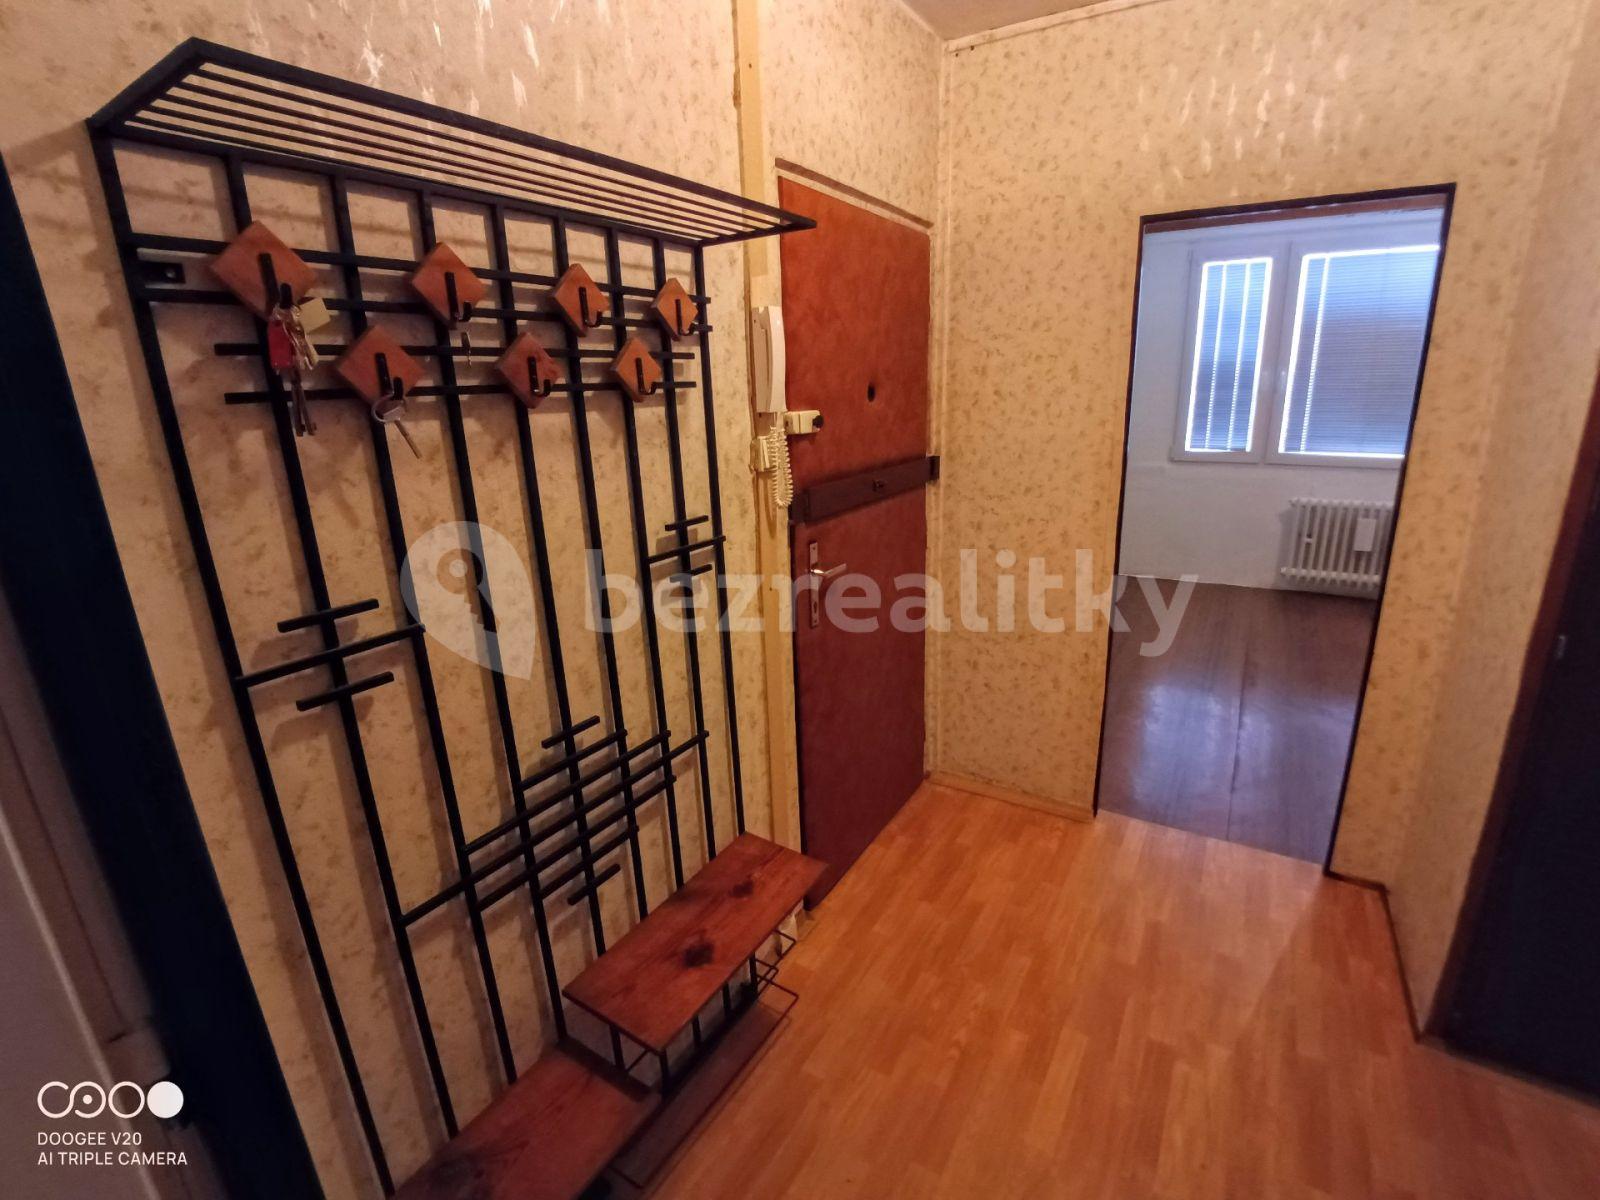 3 bedroom flat for sale, 67 m², Na Strži, Prague, Prague